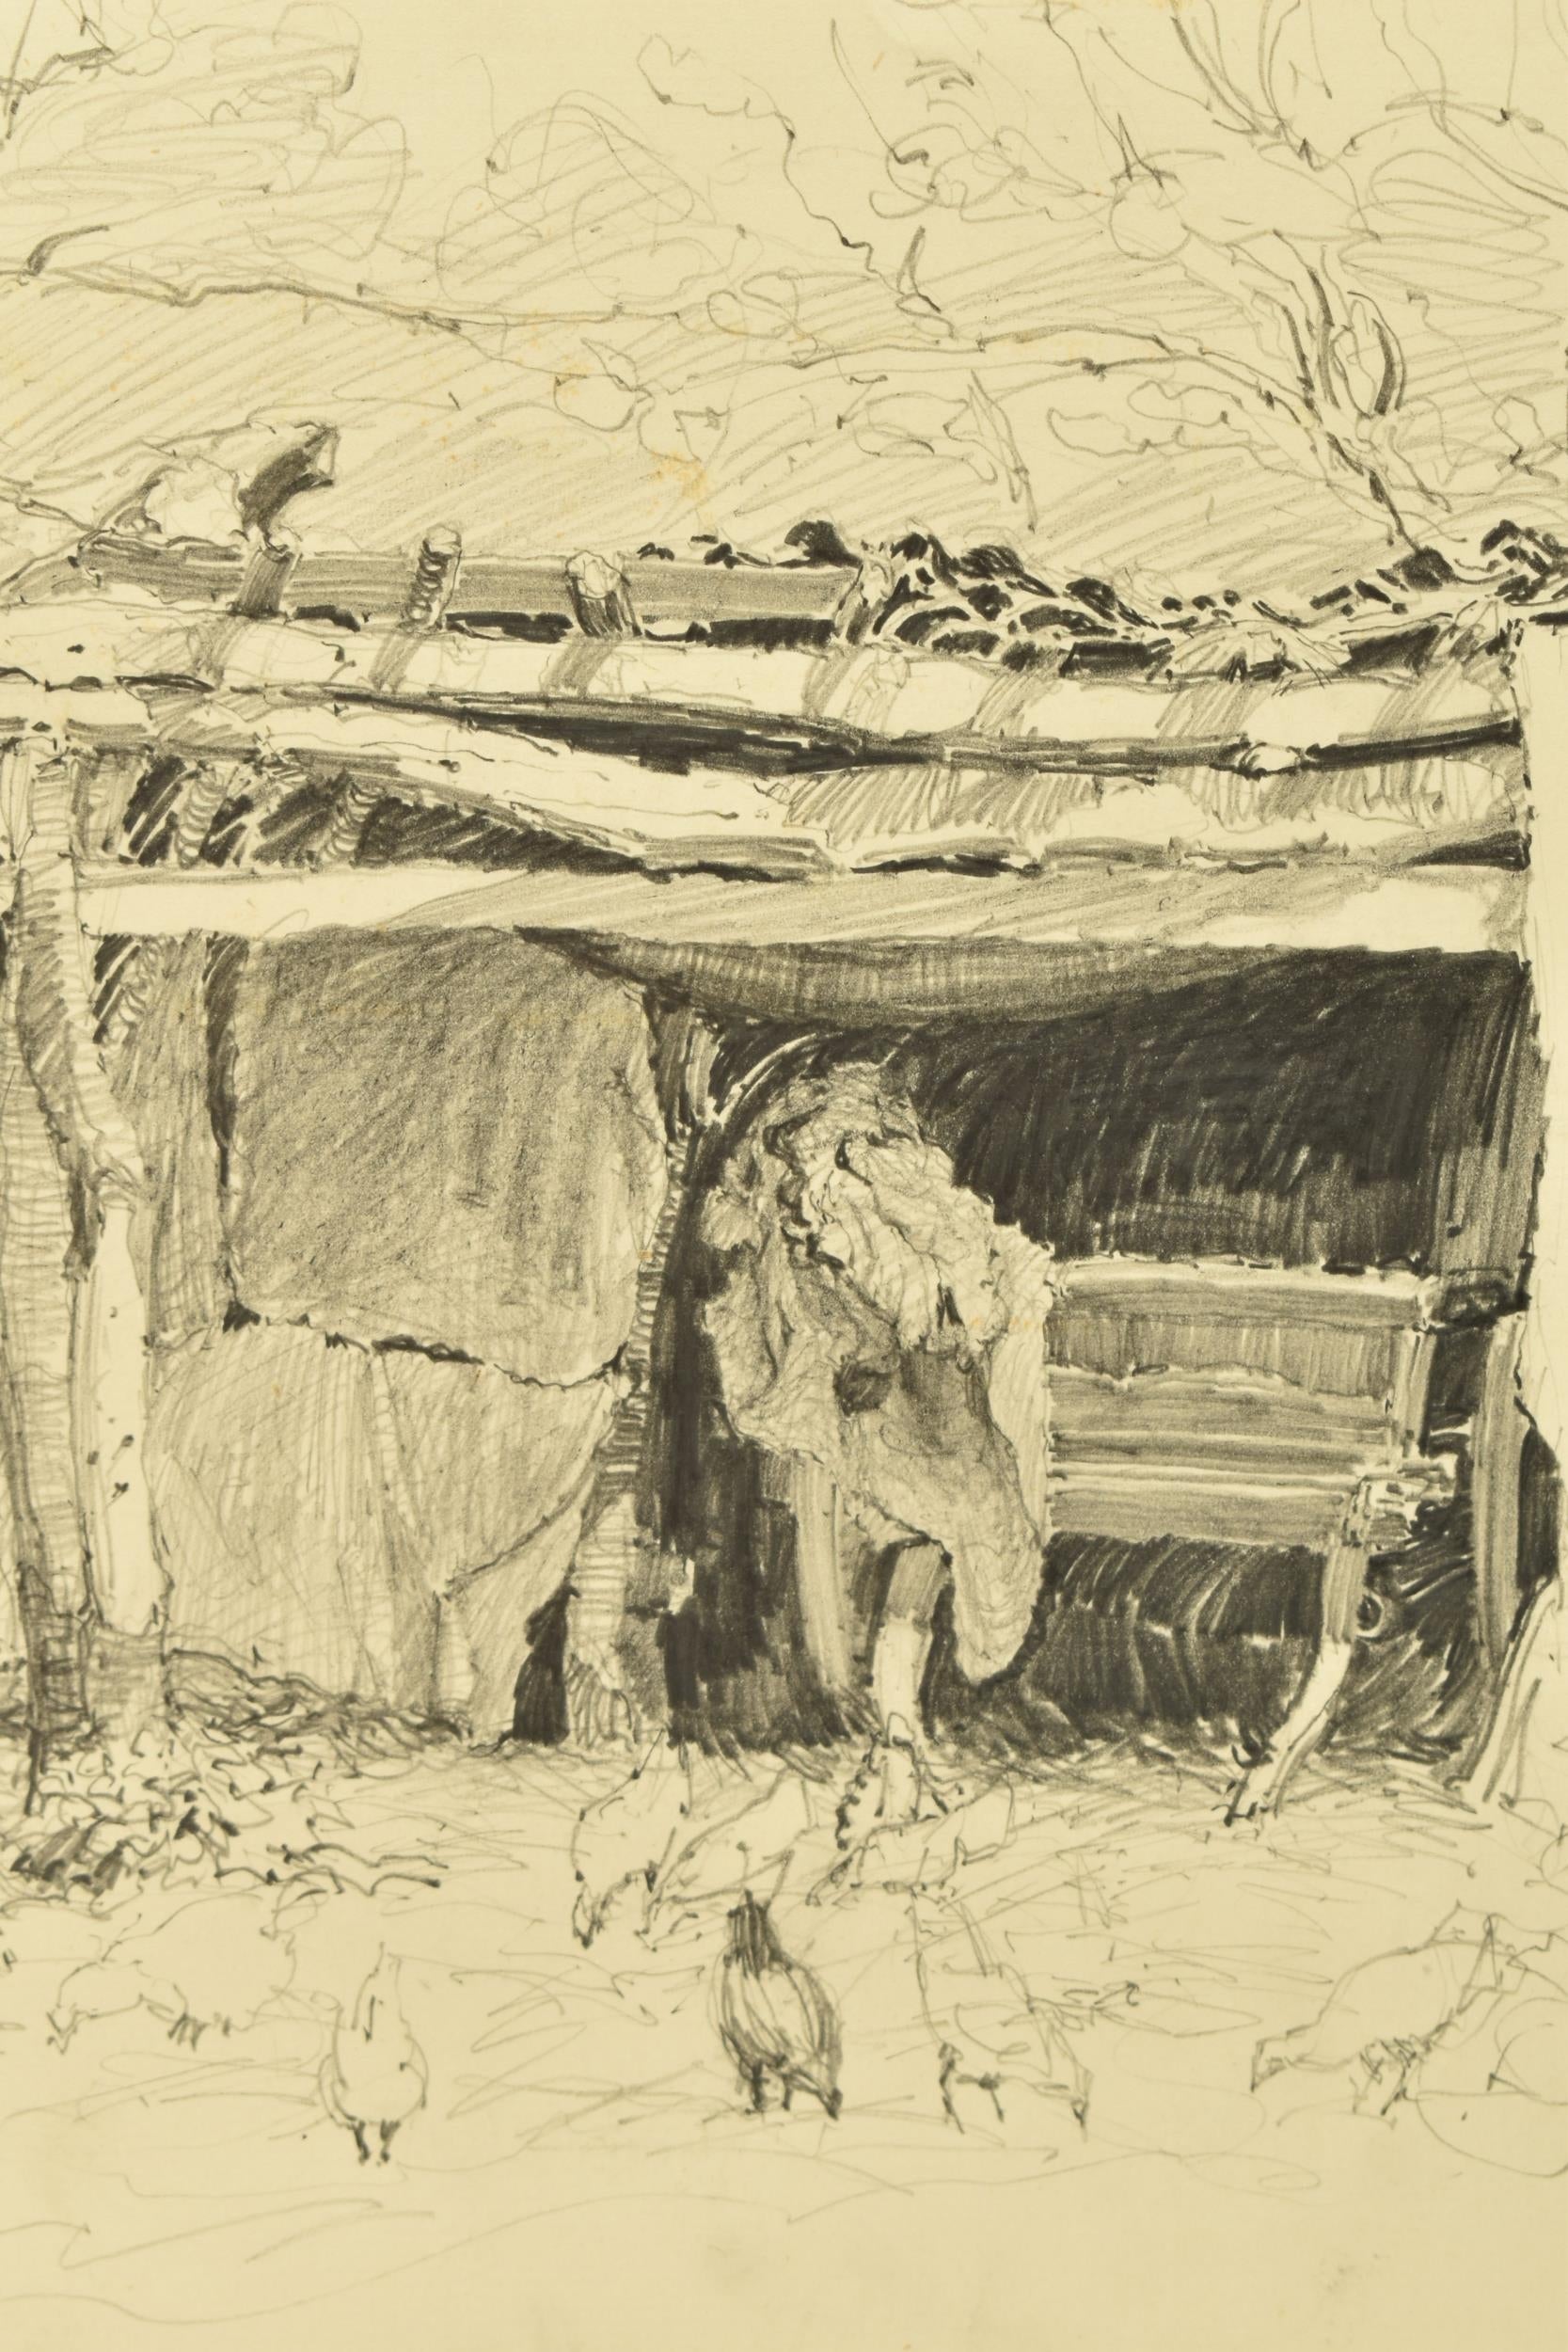 Reginald Brown, pencil on paper – Cart Shed, Norfolk